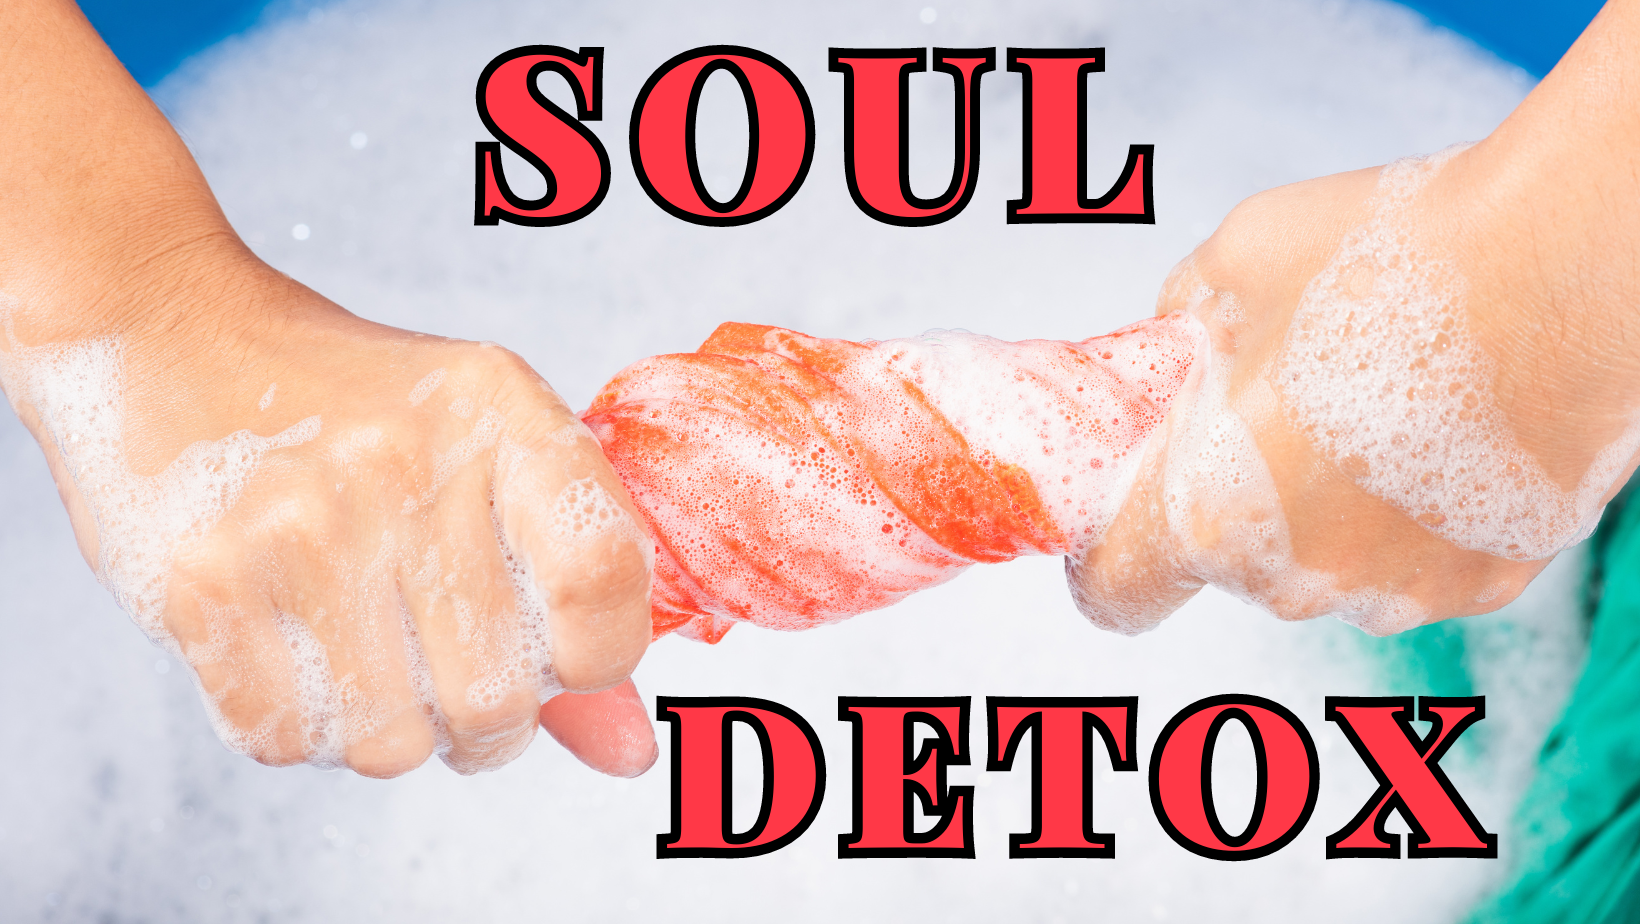 Soul Detox – Action